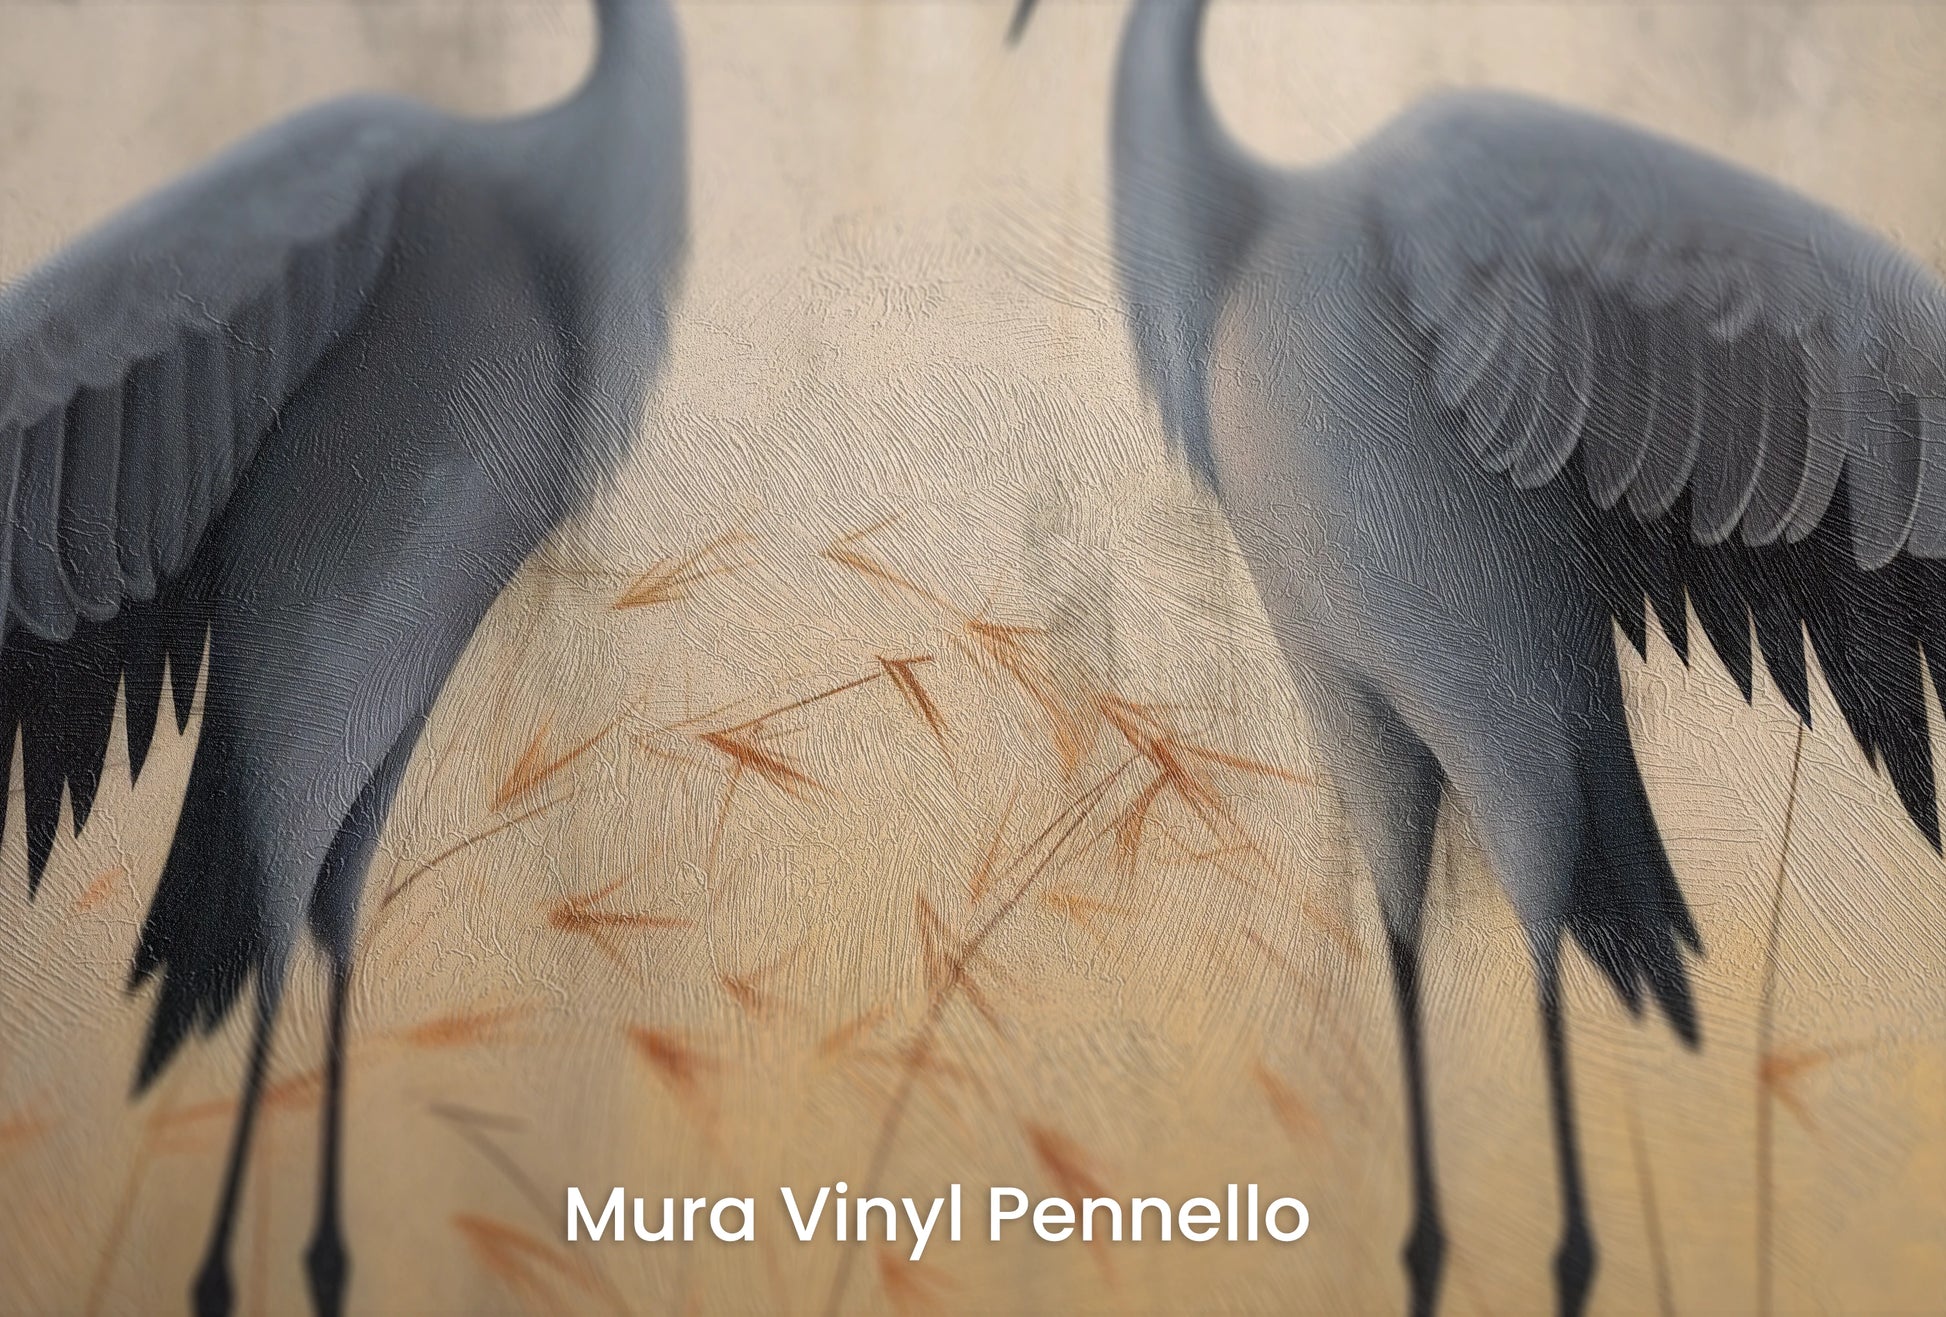 Zbliżenie na artystyczną fototapetę o nazwie Silent Dialogue na podłożu Mura Vinyl Pennello - faktura pociągnięć pędzla malarskiego.